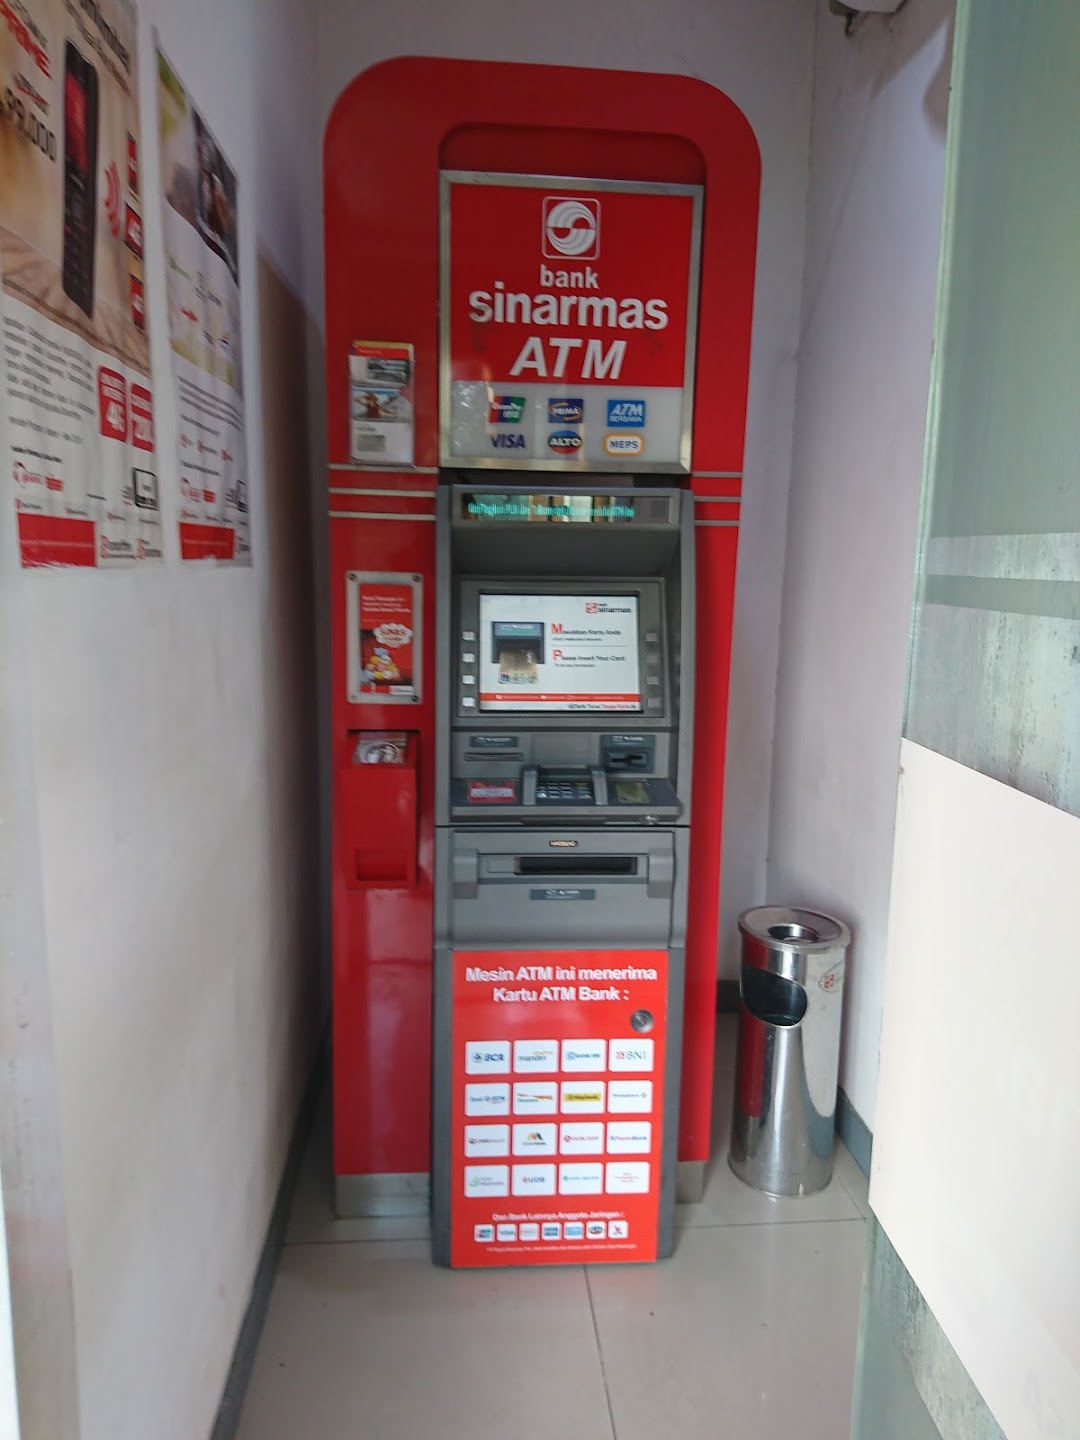 Sinarmas ATM